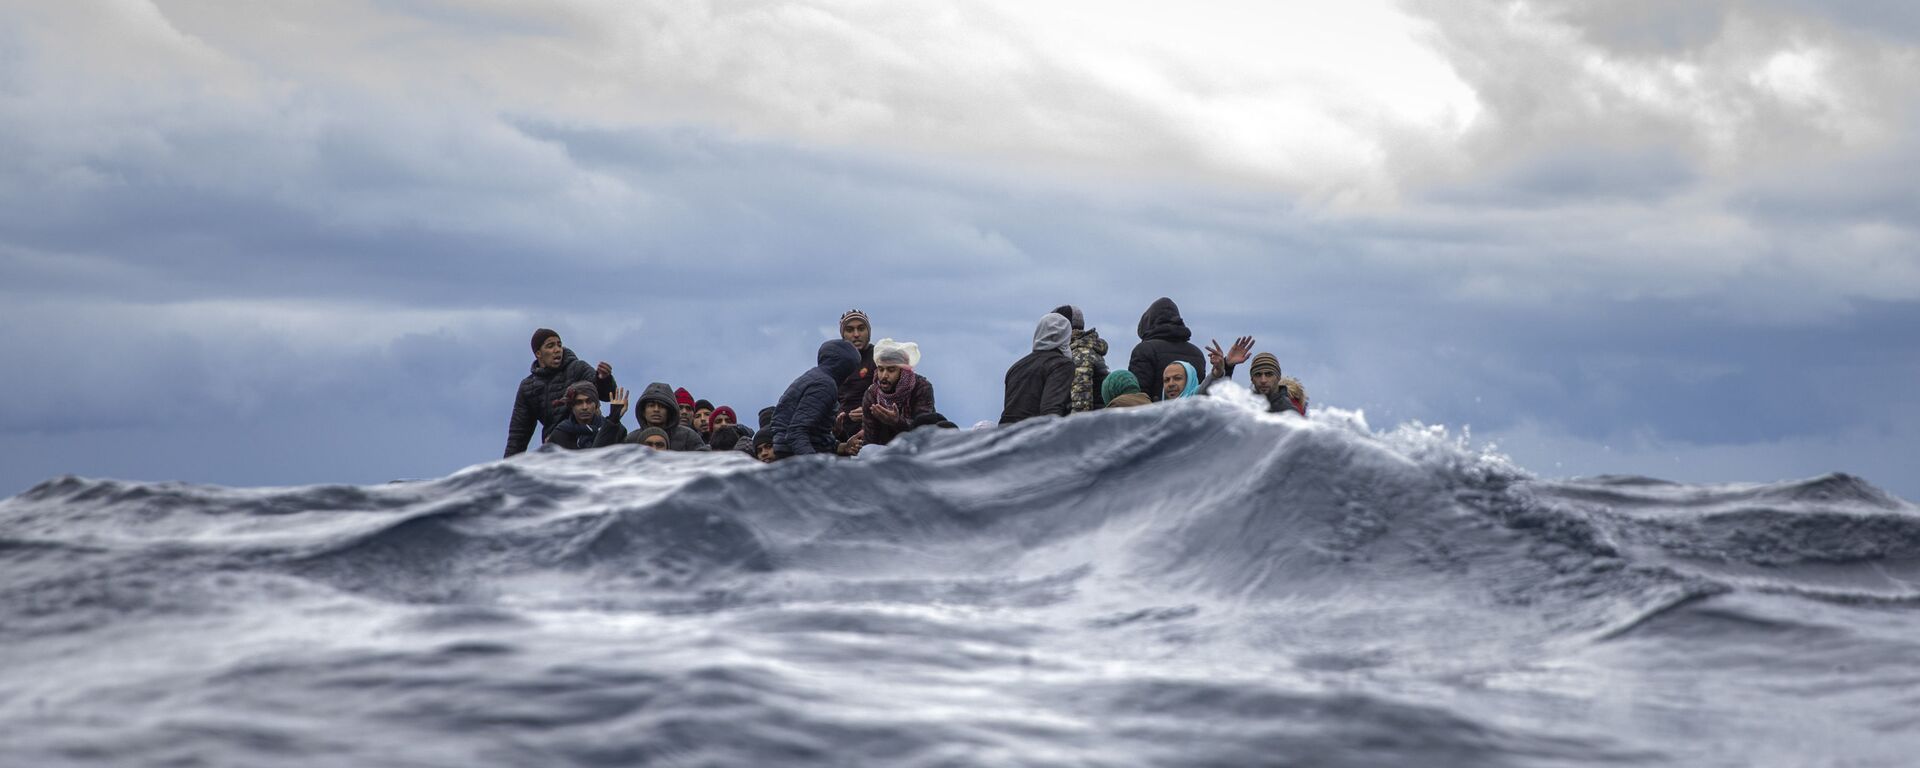 Inmigrantes en medio del mar Mediterráneo a punto de ser rescatados por la ONG española Open Arms. Enero 2020 - Sputnik Mundo, 1920, 18.09.2020